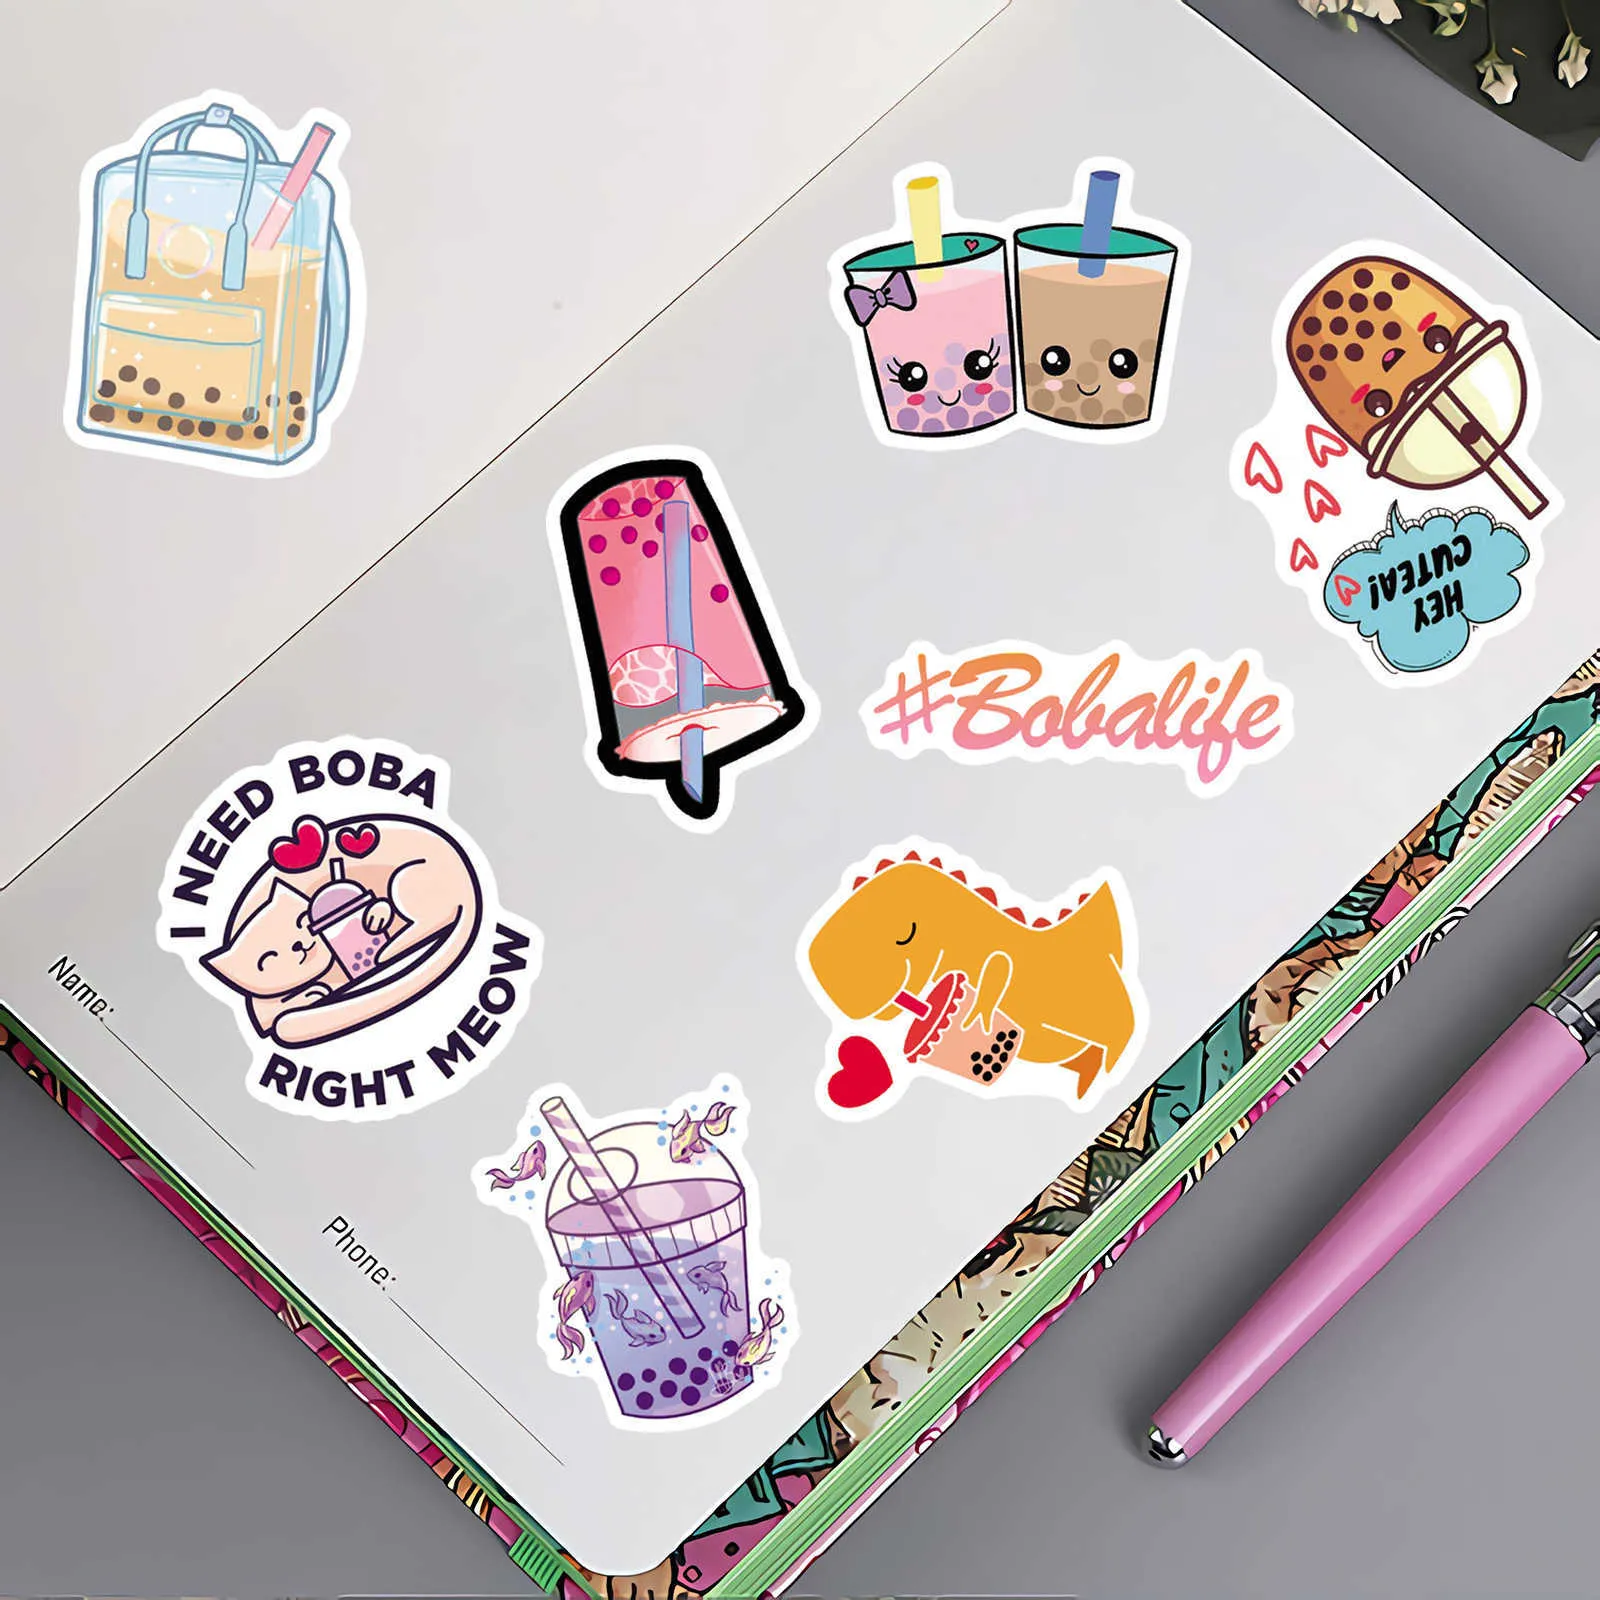 100 STKS Leuke Cartoon Parel Melk Thee Stickers Pack voor Meisje Boba Bubble Teas Decal Sticker Om DIY Bagage Laptop Gitaar Auto